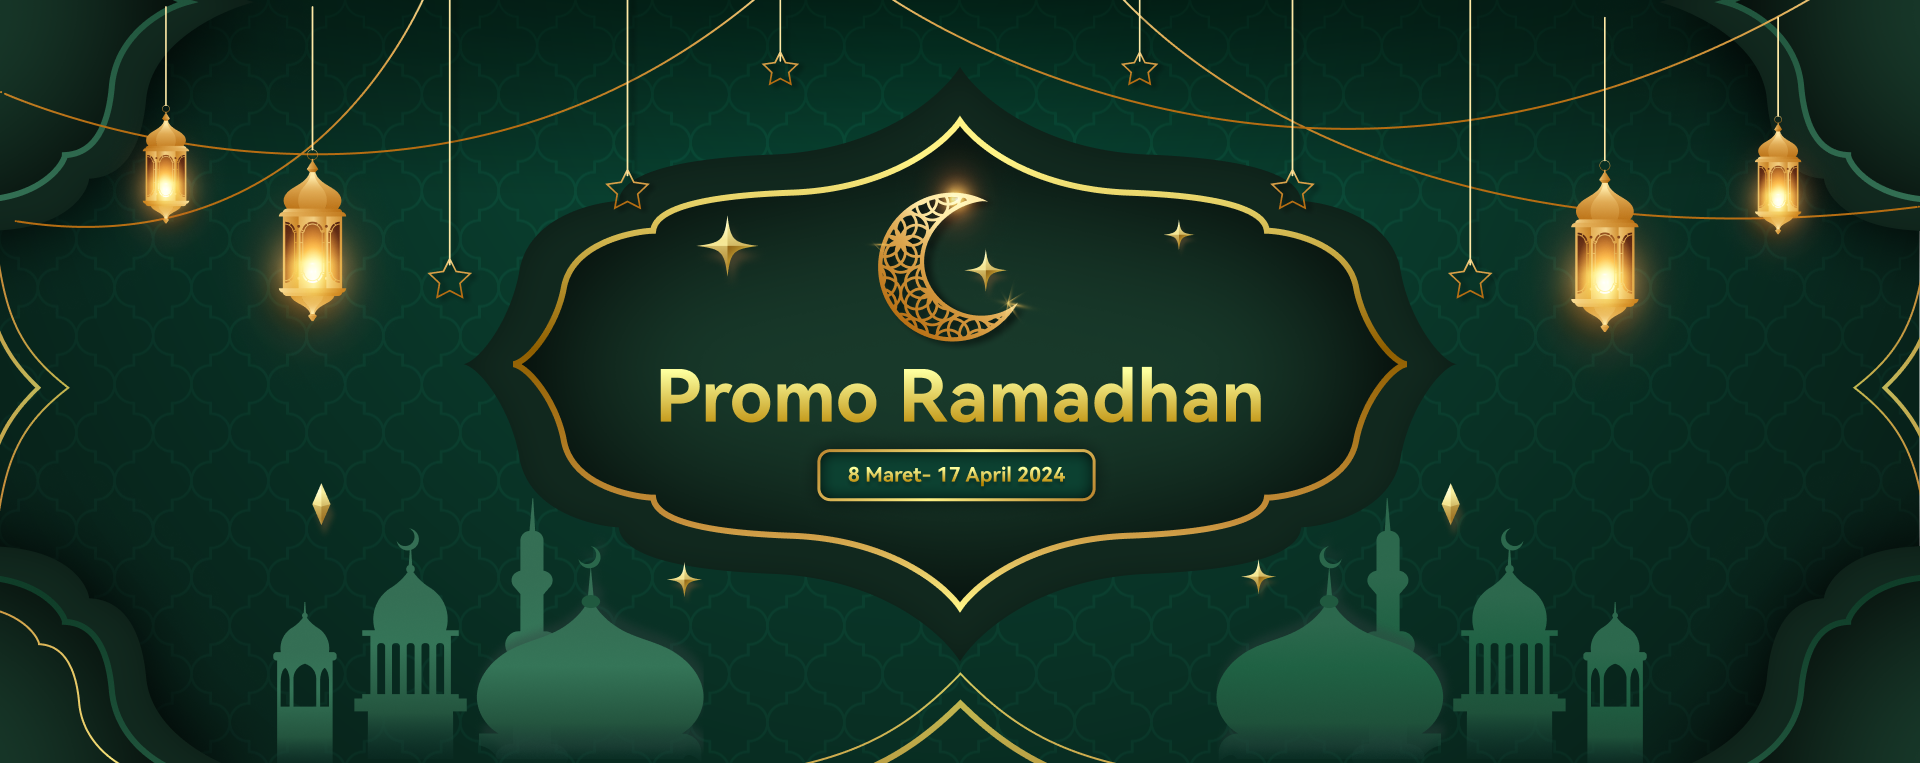 promo ramadhan